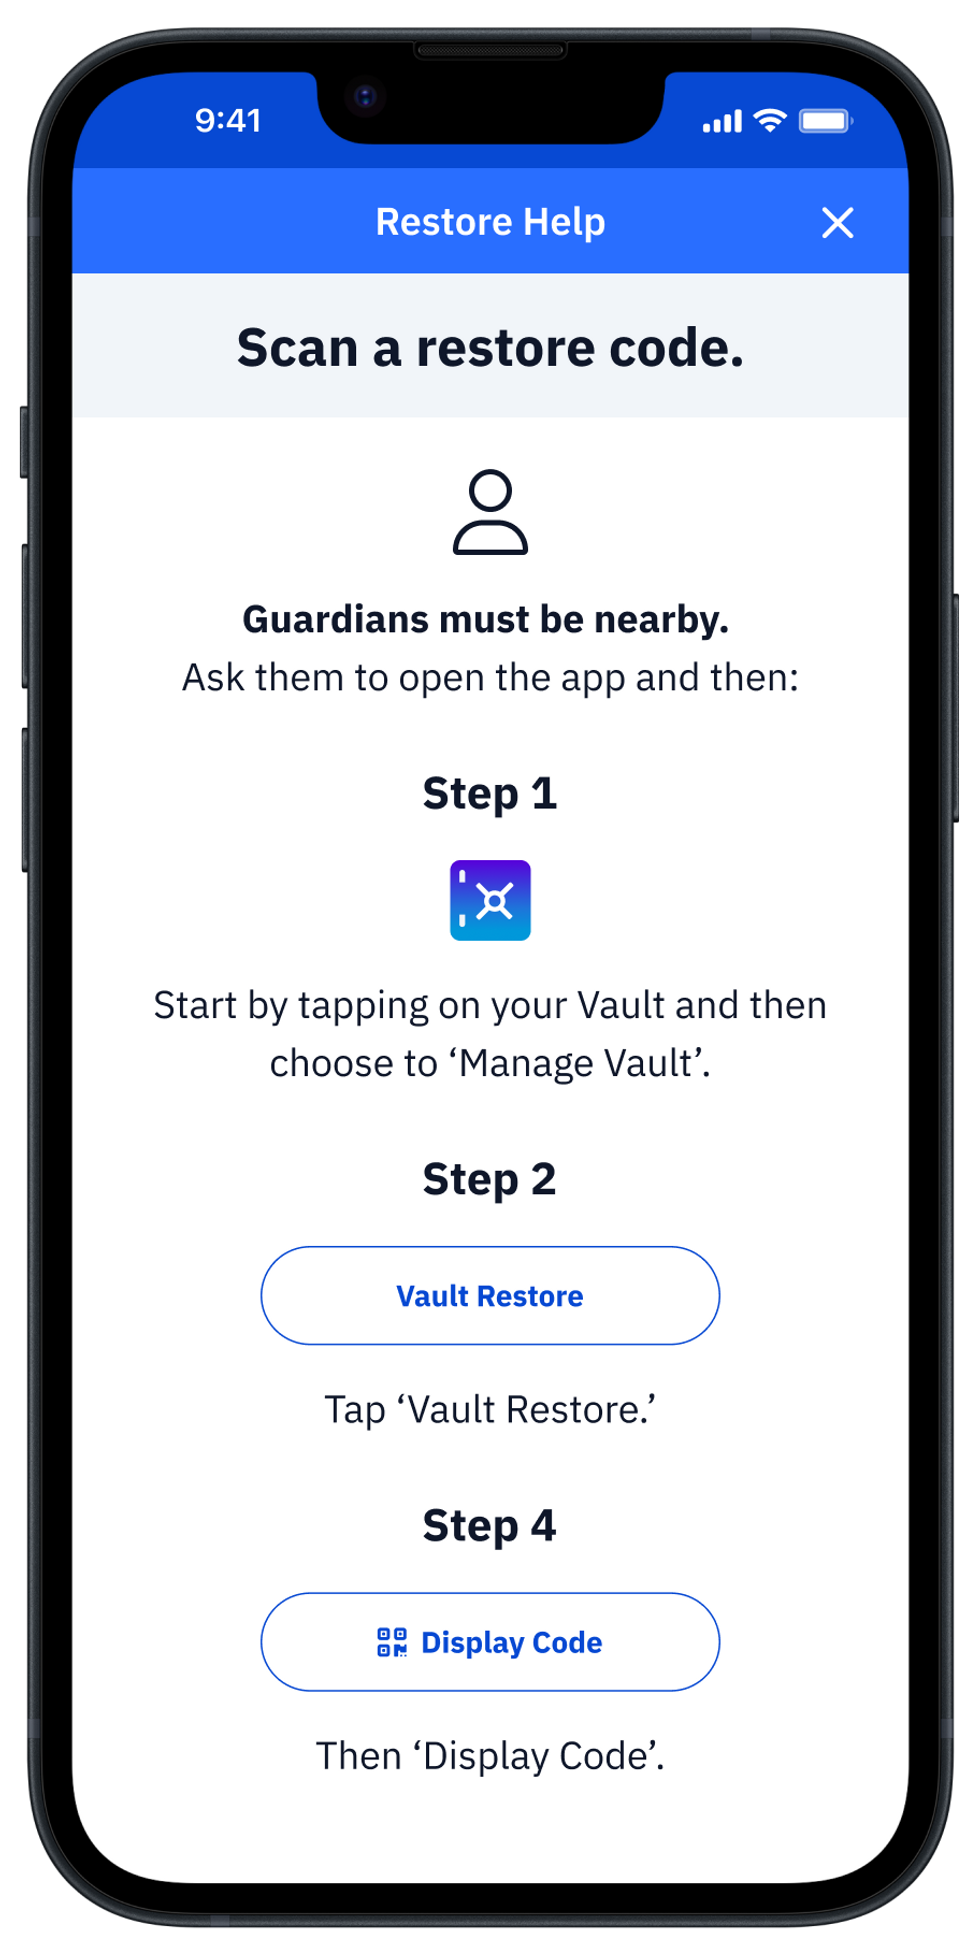 Help screenshot for Restoring a Vault